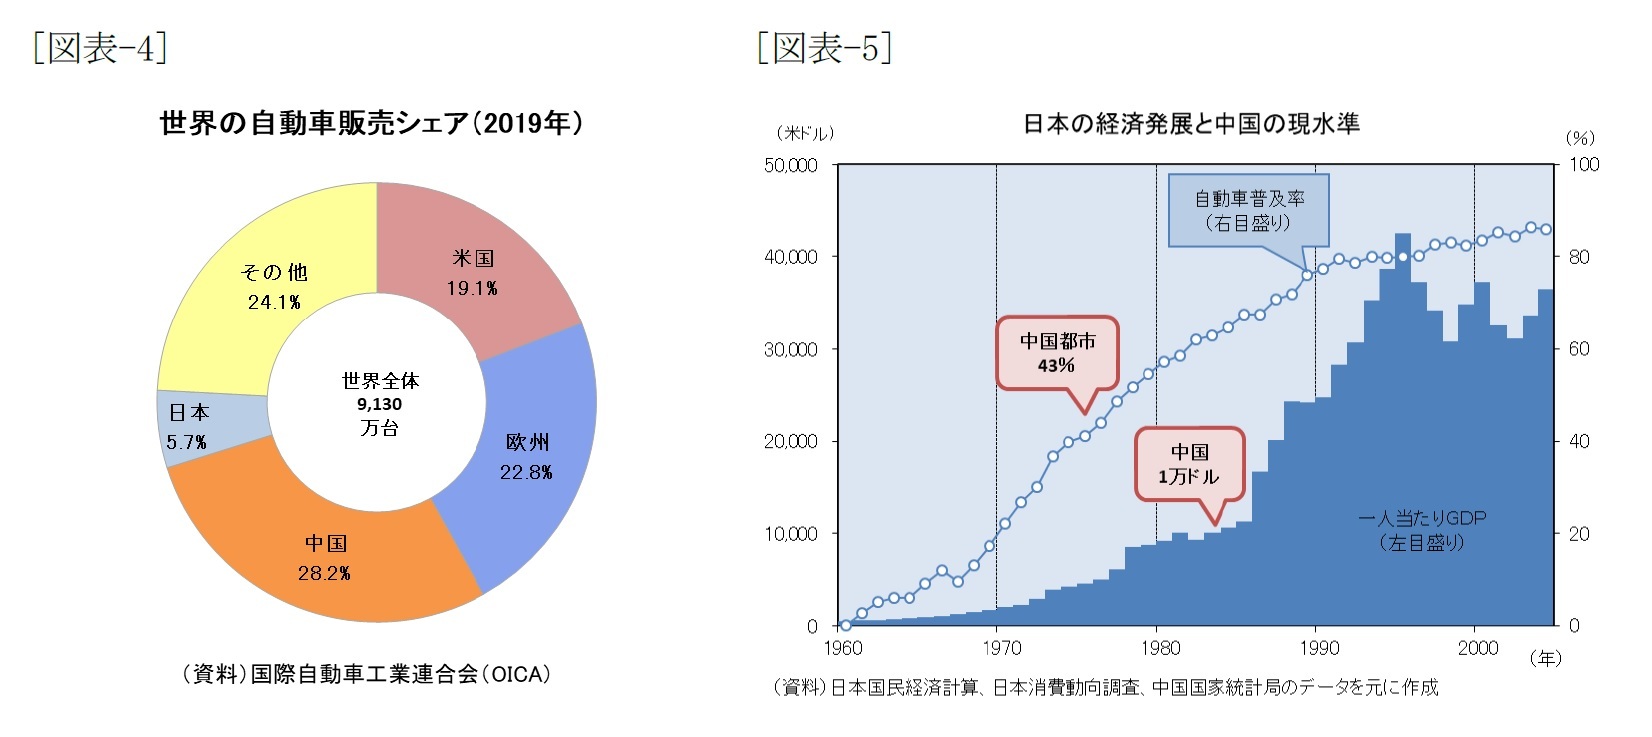 [図表-4]世界の自動車販売シェア(2019年)/[図表-5]日本の経済発展と中国の現水準